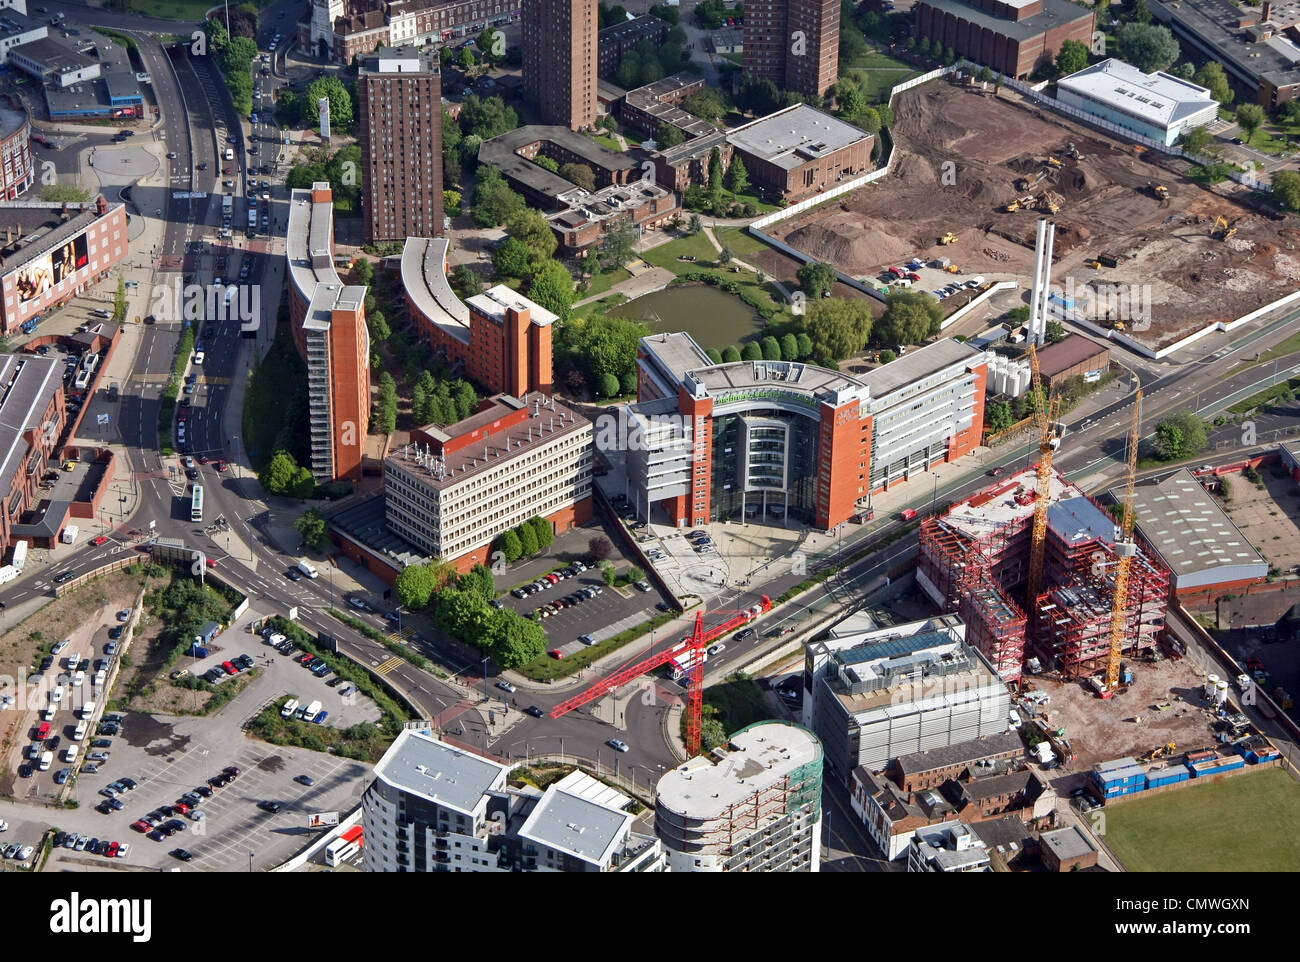 Vista aérea de la Universidad Aston Birmingham con el Matthew Boulton College y las residencias de estudiantes Lakeside prominentes Foto de stock